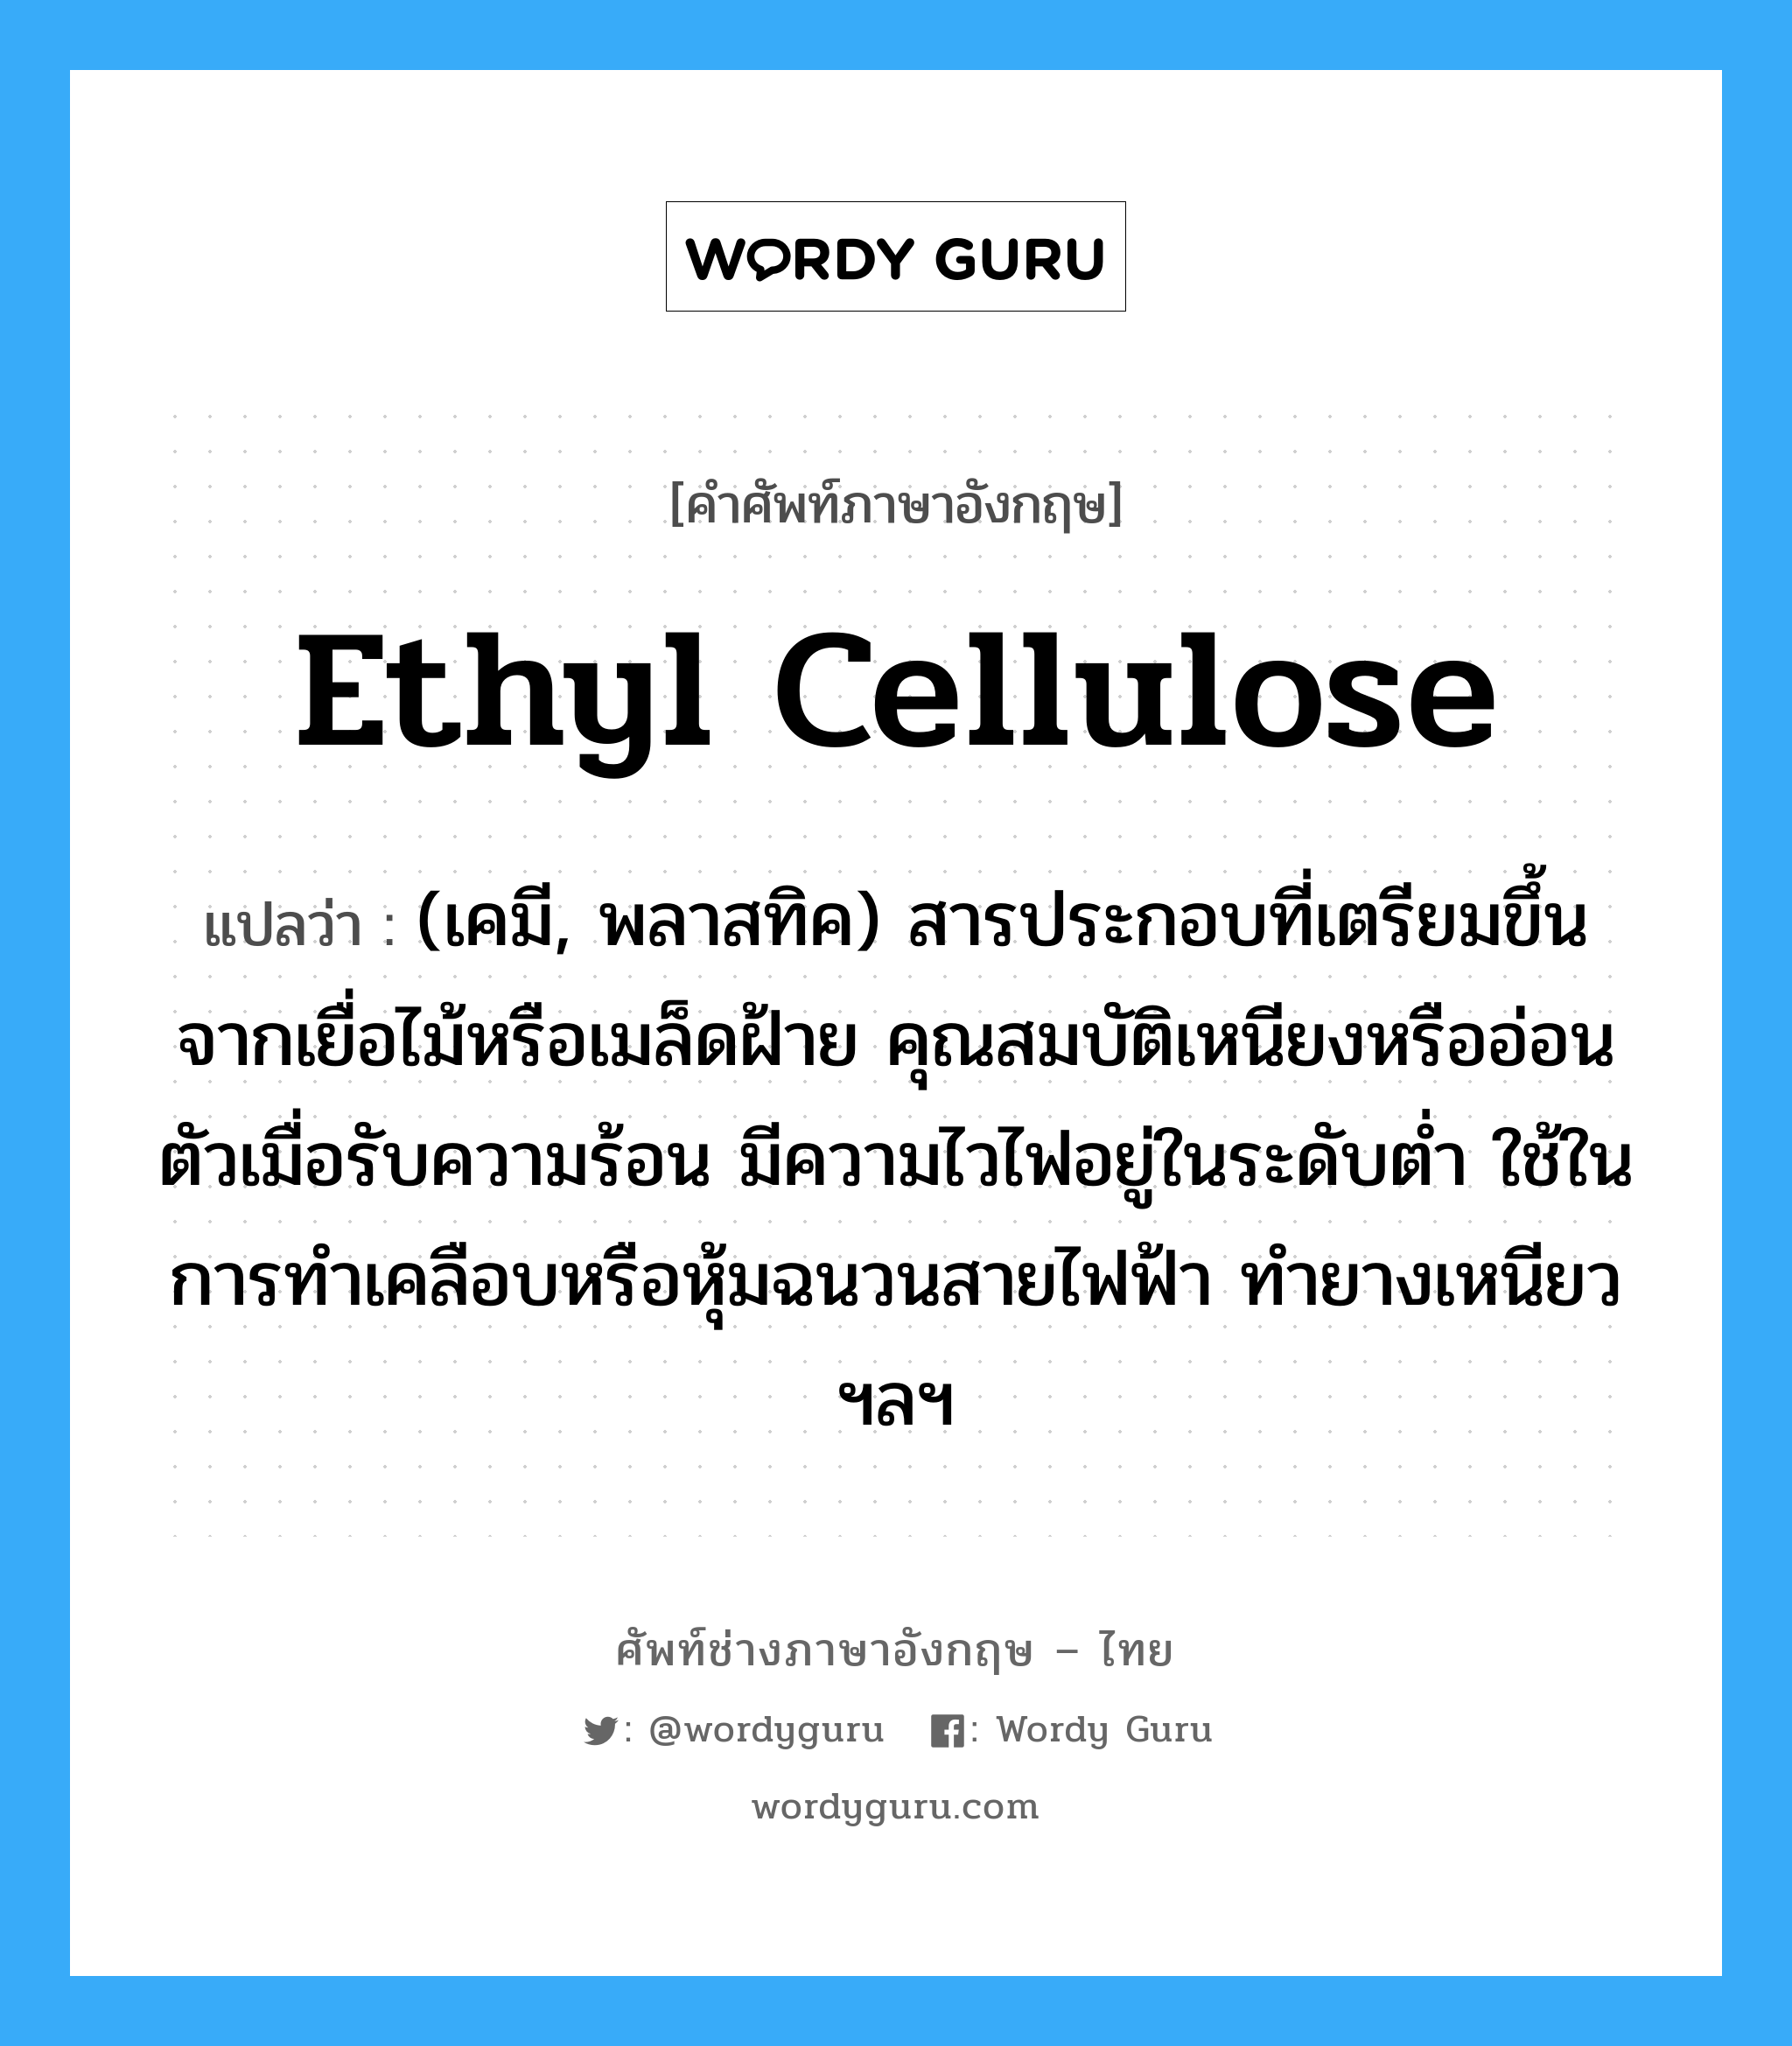 ethyl cellulose แปลว่า?, คำศัพท์ช่างภาษาอังกฤษ - ไทย ethyl cellulose คำศัพท์ภาษาอังกฤษ ethyl cellulose แปลว่า (เคมี, พลาสทิค) สารประกอบที่เตรียมขึ้นจากเยื่อไม้หรือเมล็ดฝ้าย คุณสมบัติเหนียงหรืออ่อนตัวเมื่อรับความร้อน มีความไวไฟอยู่ในระดับต่ำ ใช้ในการทำเคลือบหรือหุ้มฉนวนสายไฟฟ้า ทำยางเหนียว ฯลฯ